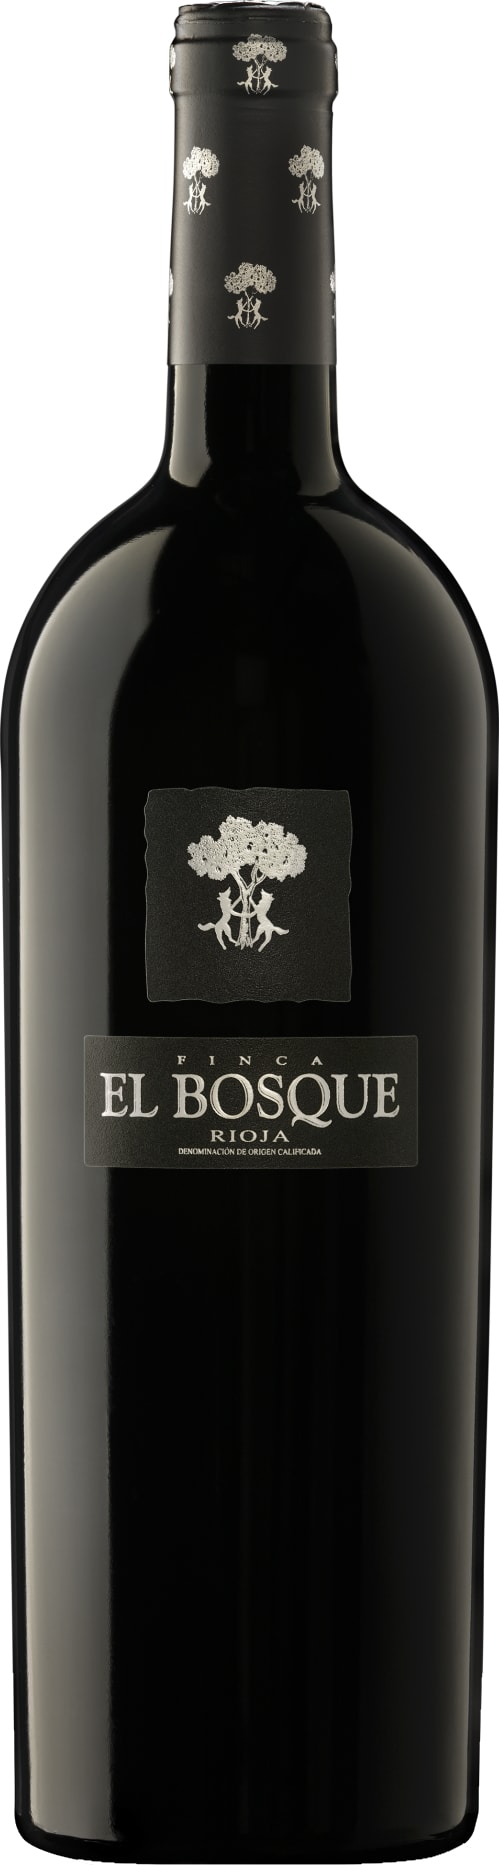 Vinedos Sierra Cantabria Rioja Finca El Bosque 2021 75cl - Buy Vinedos Sierra Cantabria Wines from GREAT WINES DIRECT wine shop